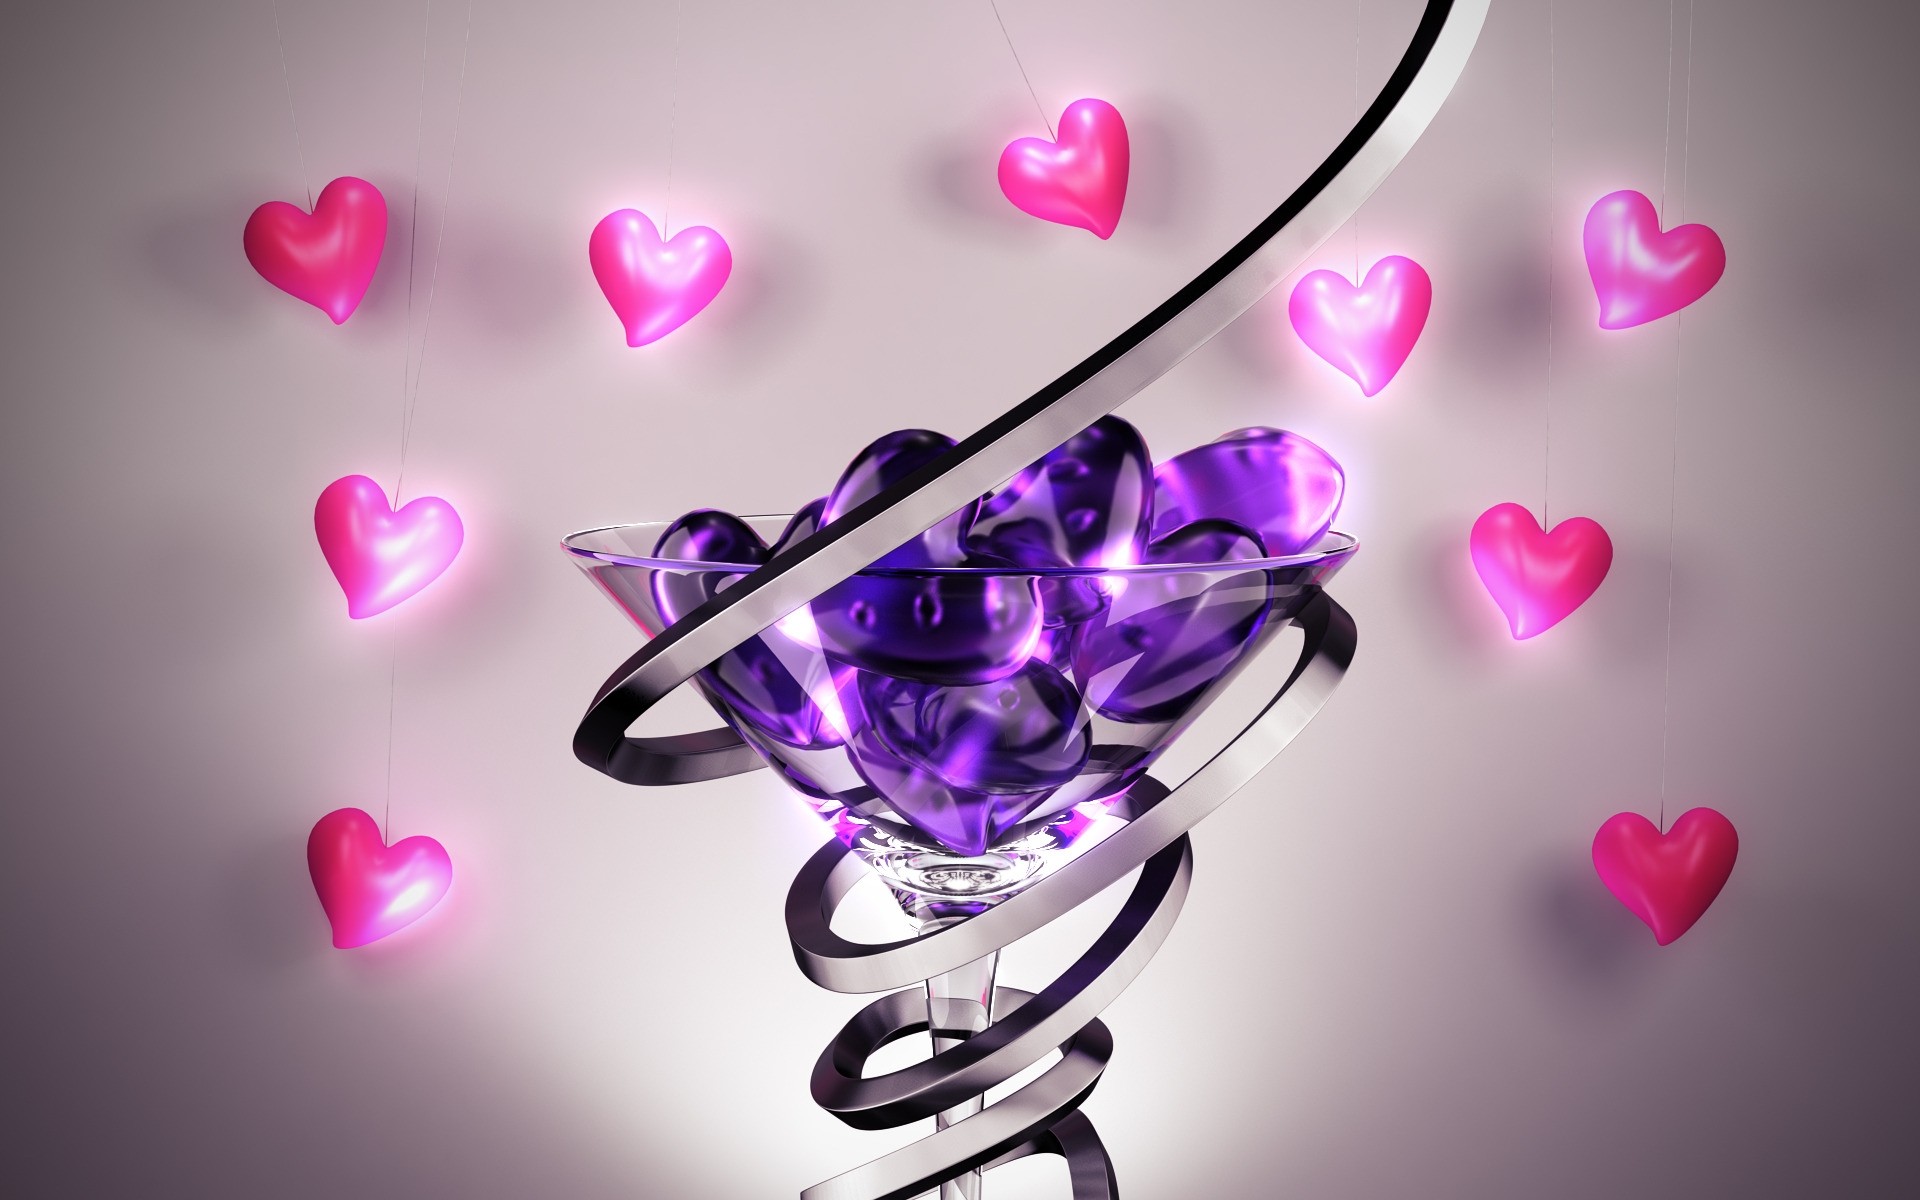 абстракция романтика любовь сердце романтический яркий украшения рабочего стола дизайн спираль стекло